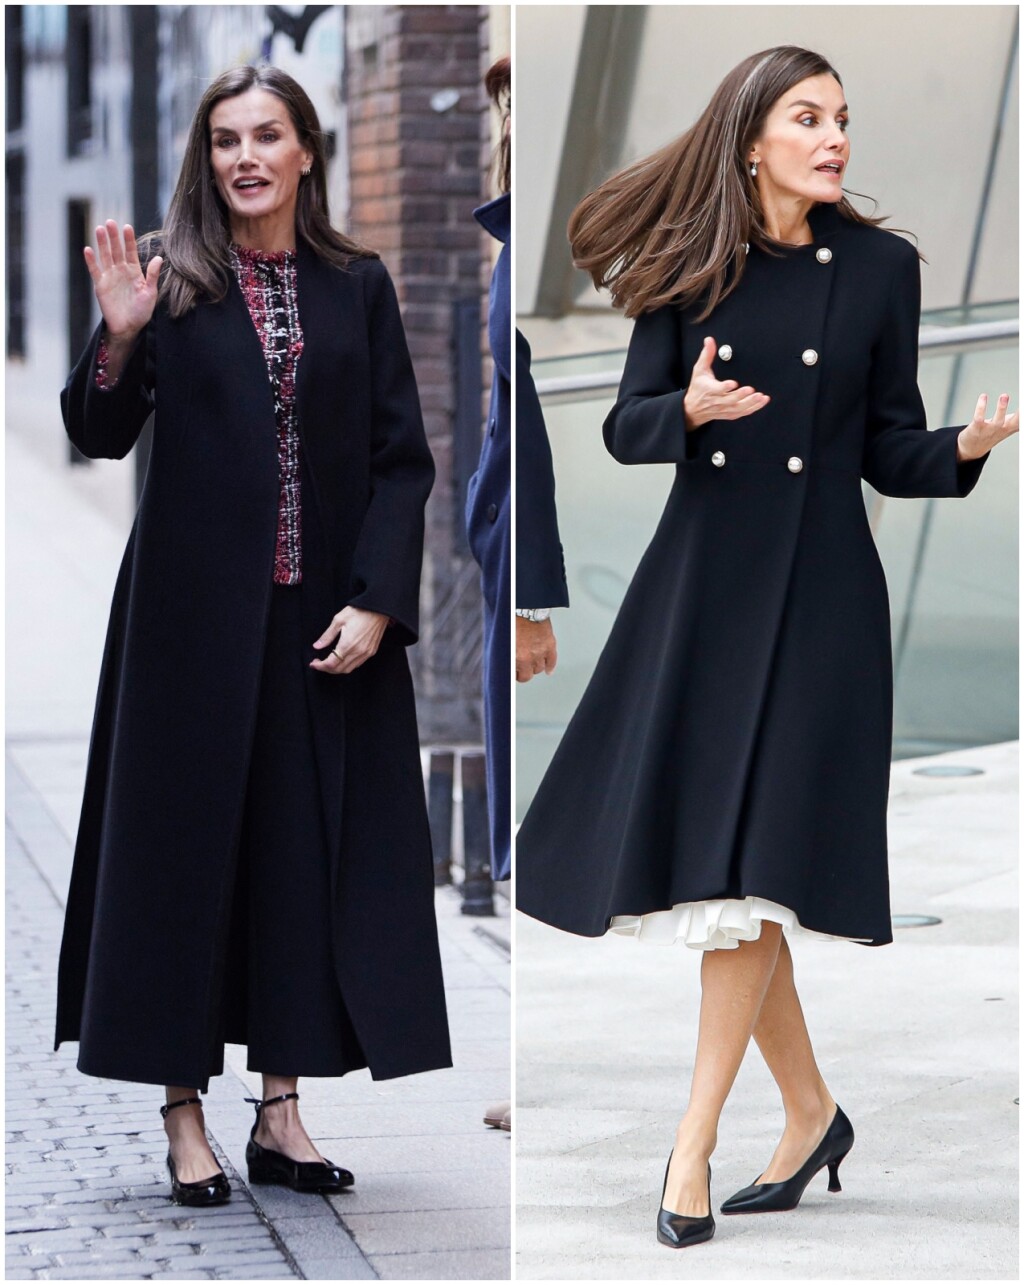 Kraljica Letizia posljednjih mjeseci preferira udobniju obuću